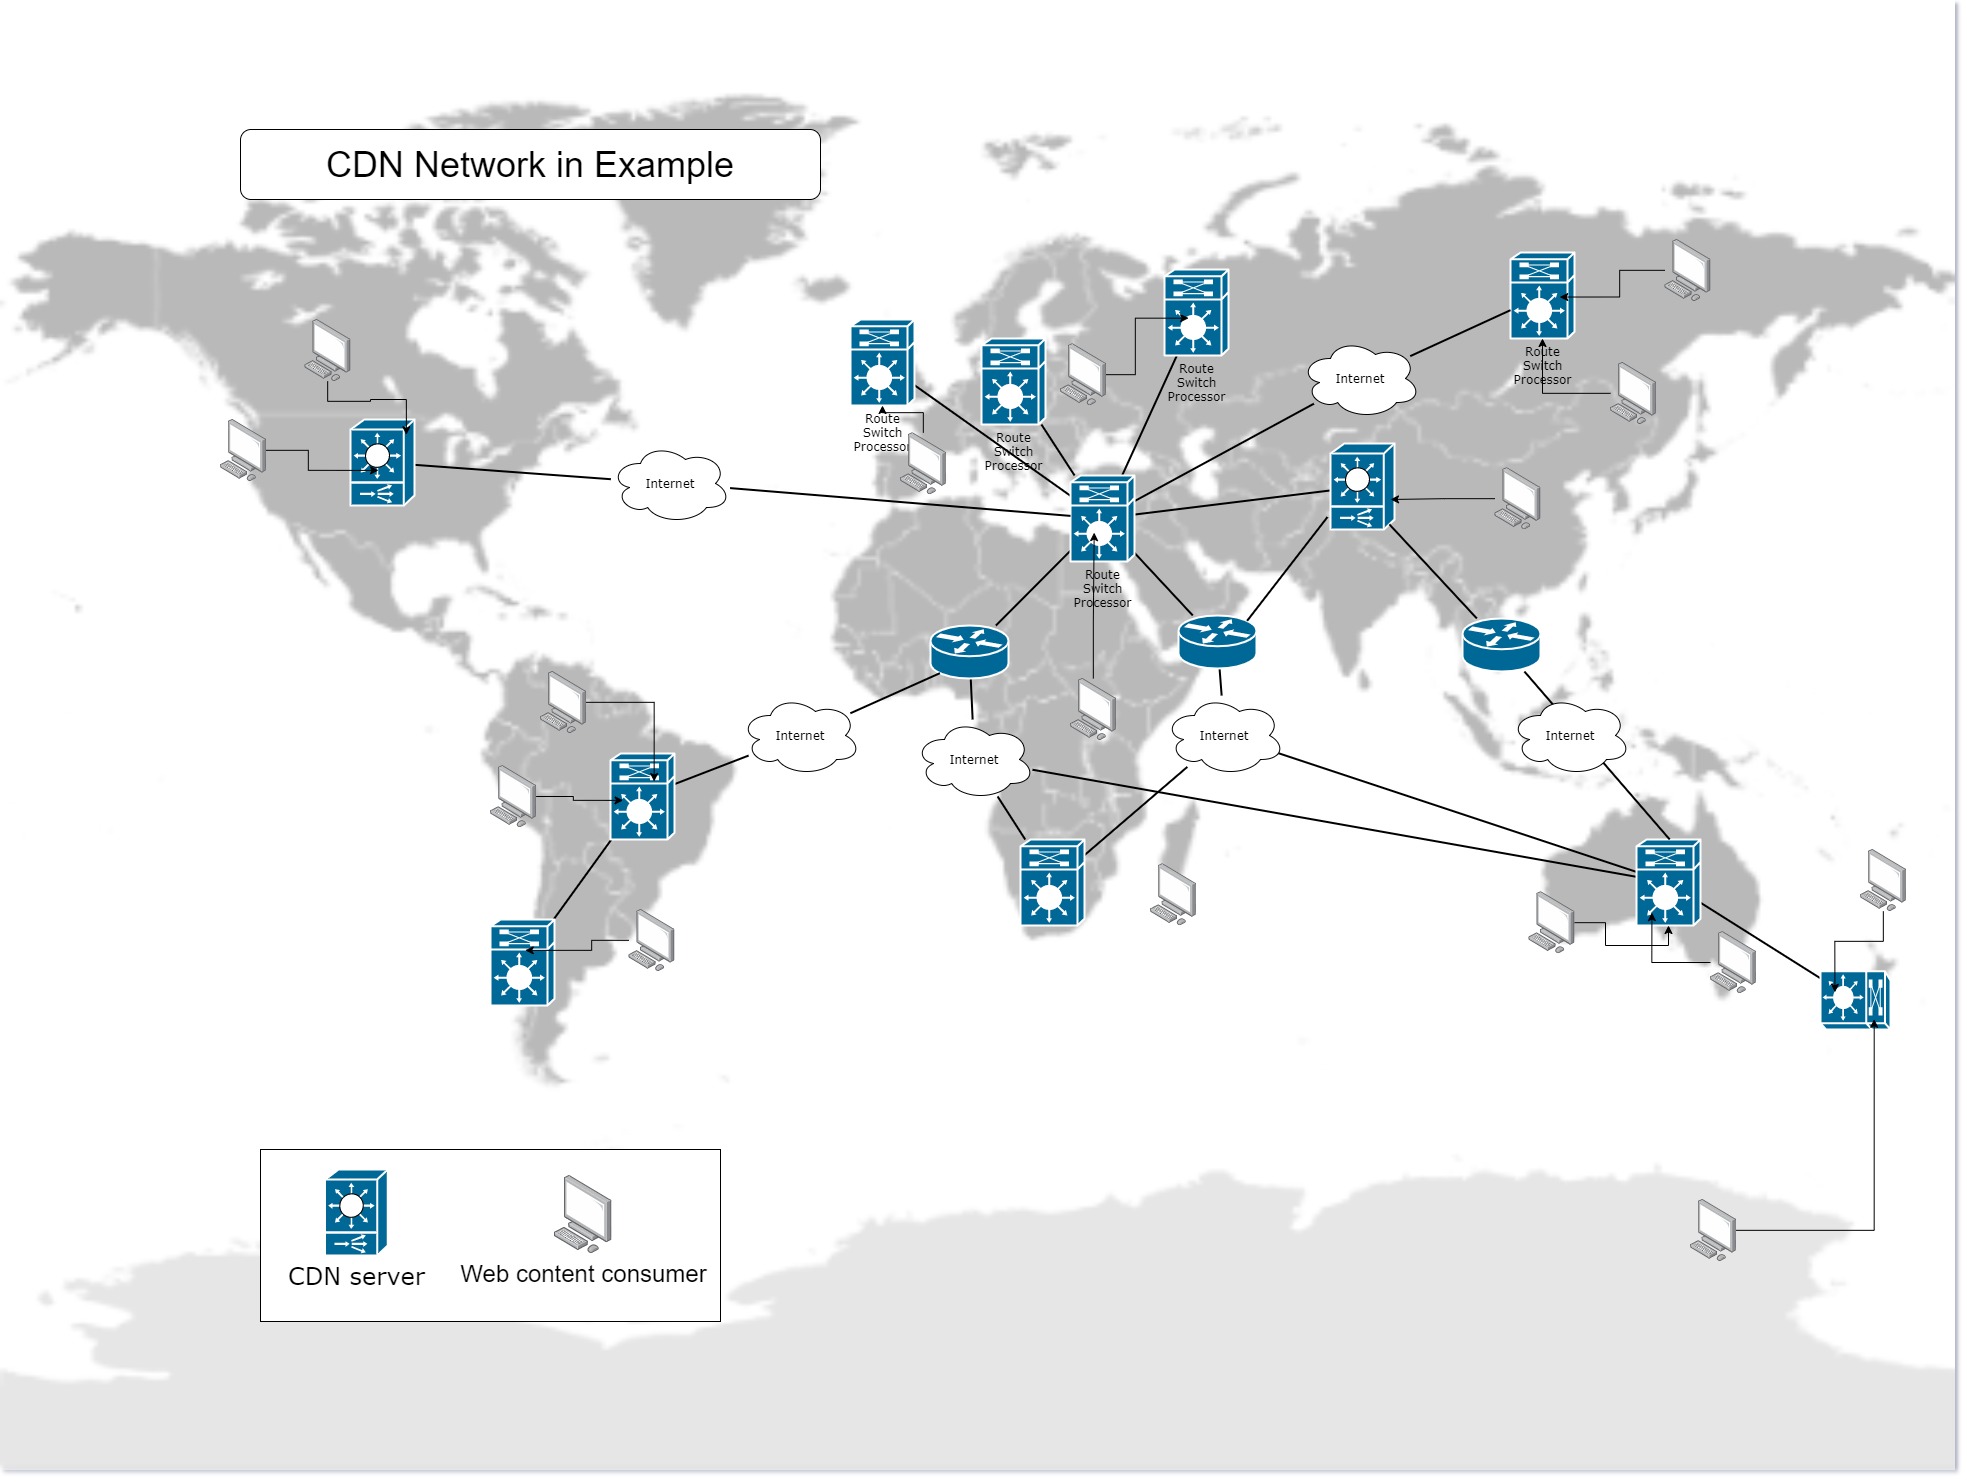 The global CDN network